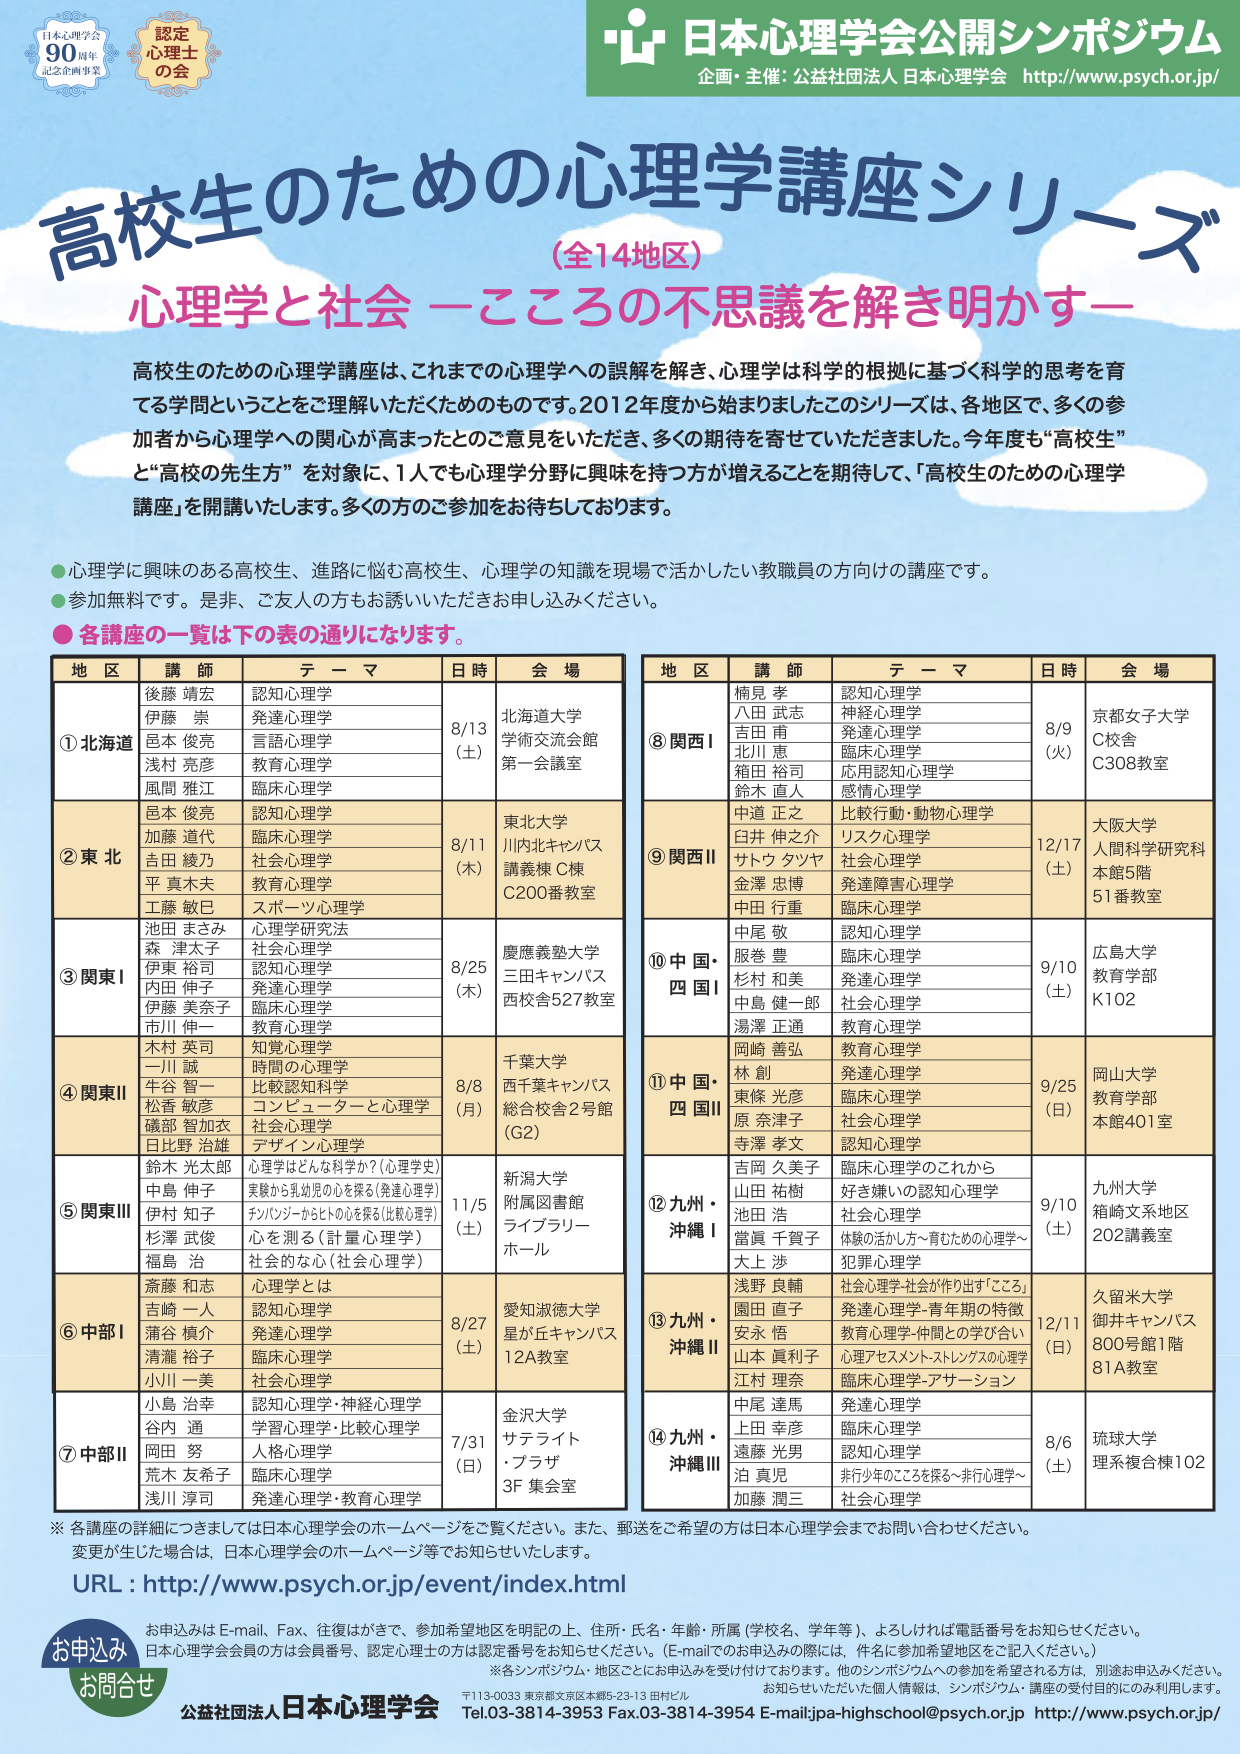 8月27日に愛知淑徳大学で2016年度日本心理学会公開シンポジウム「高校生のための心理学講座」を開催